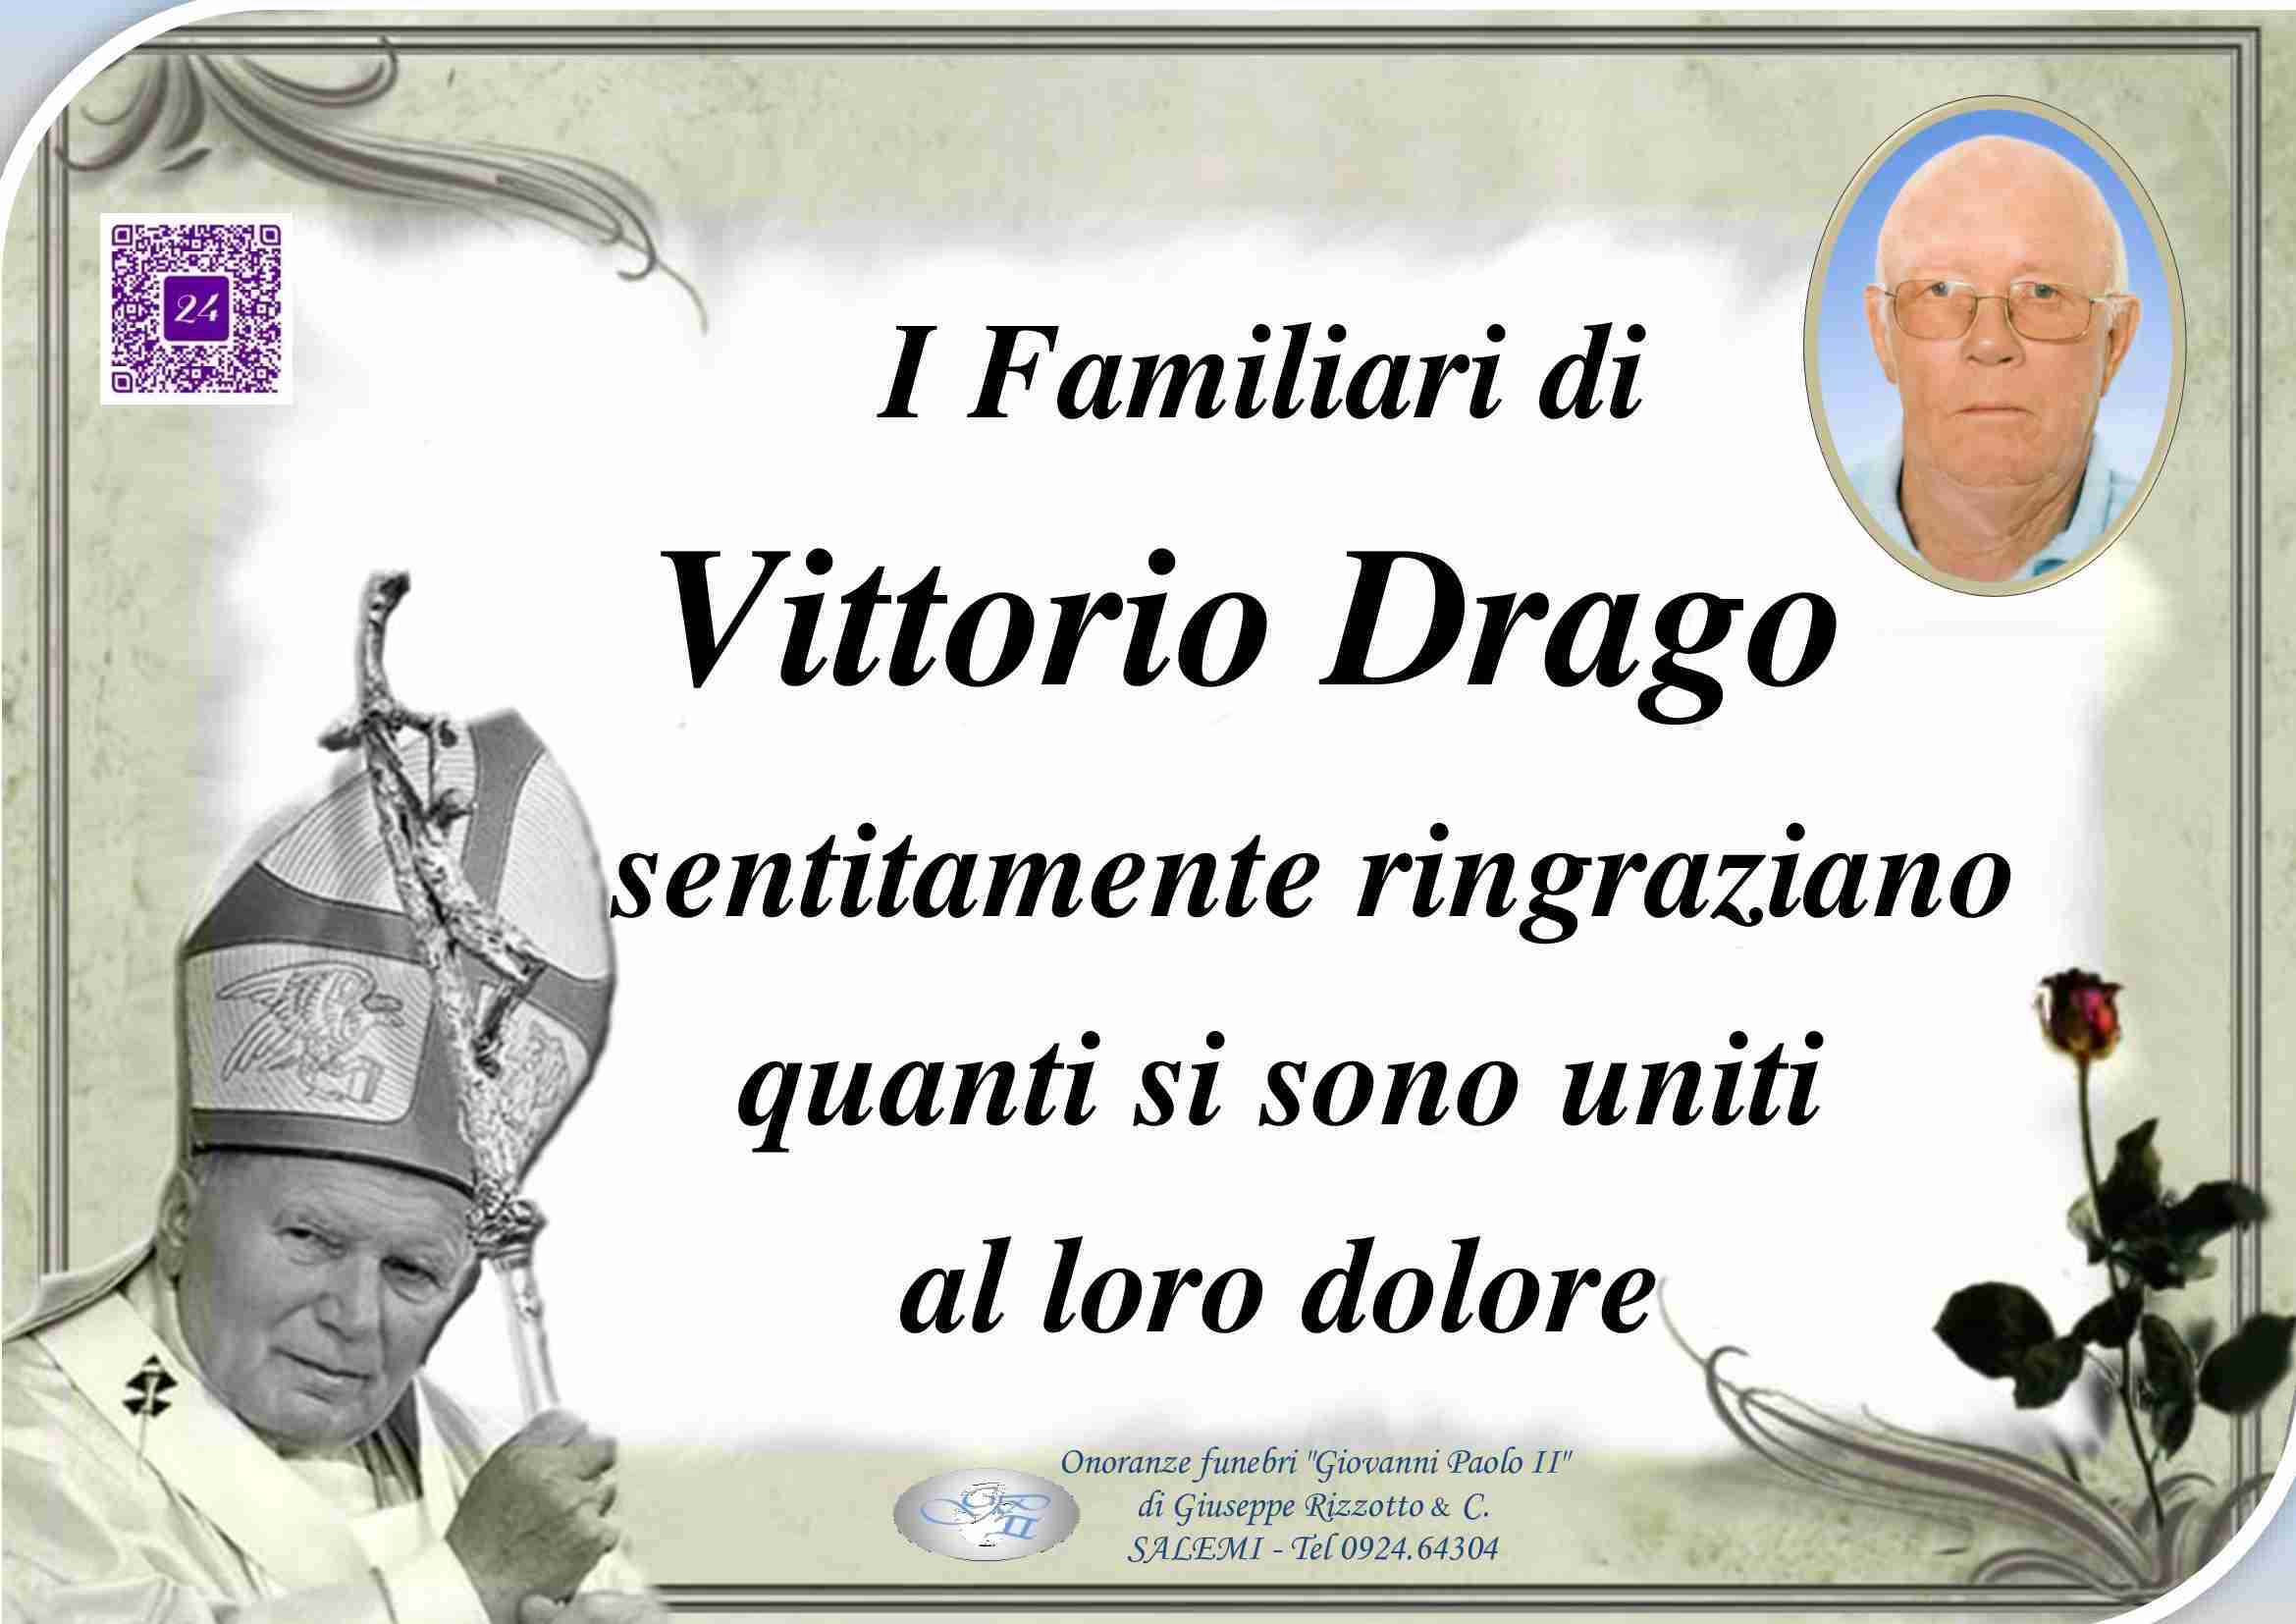 Vittorio Drago